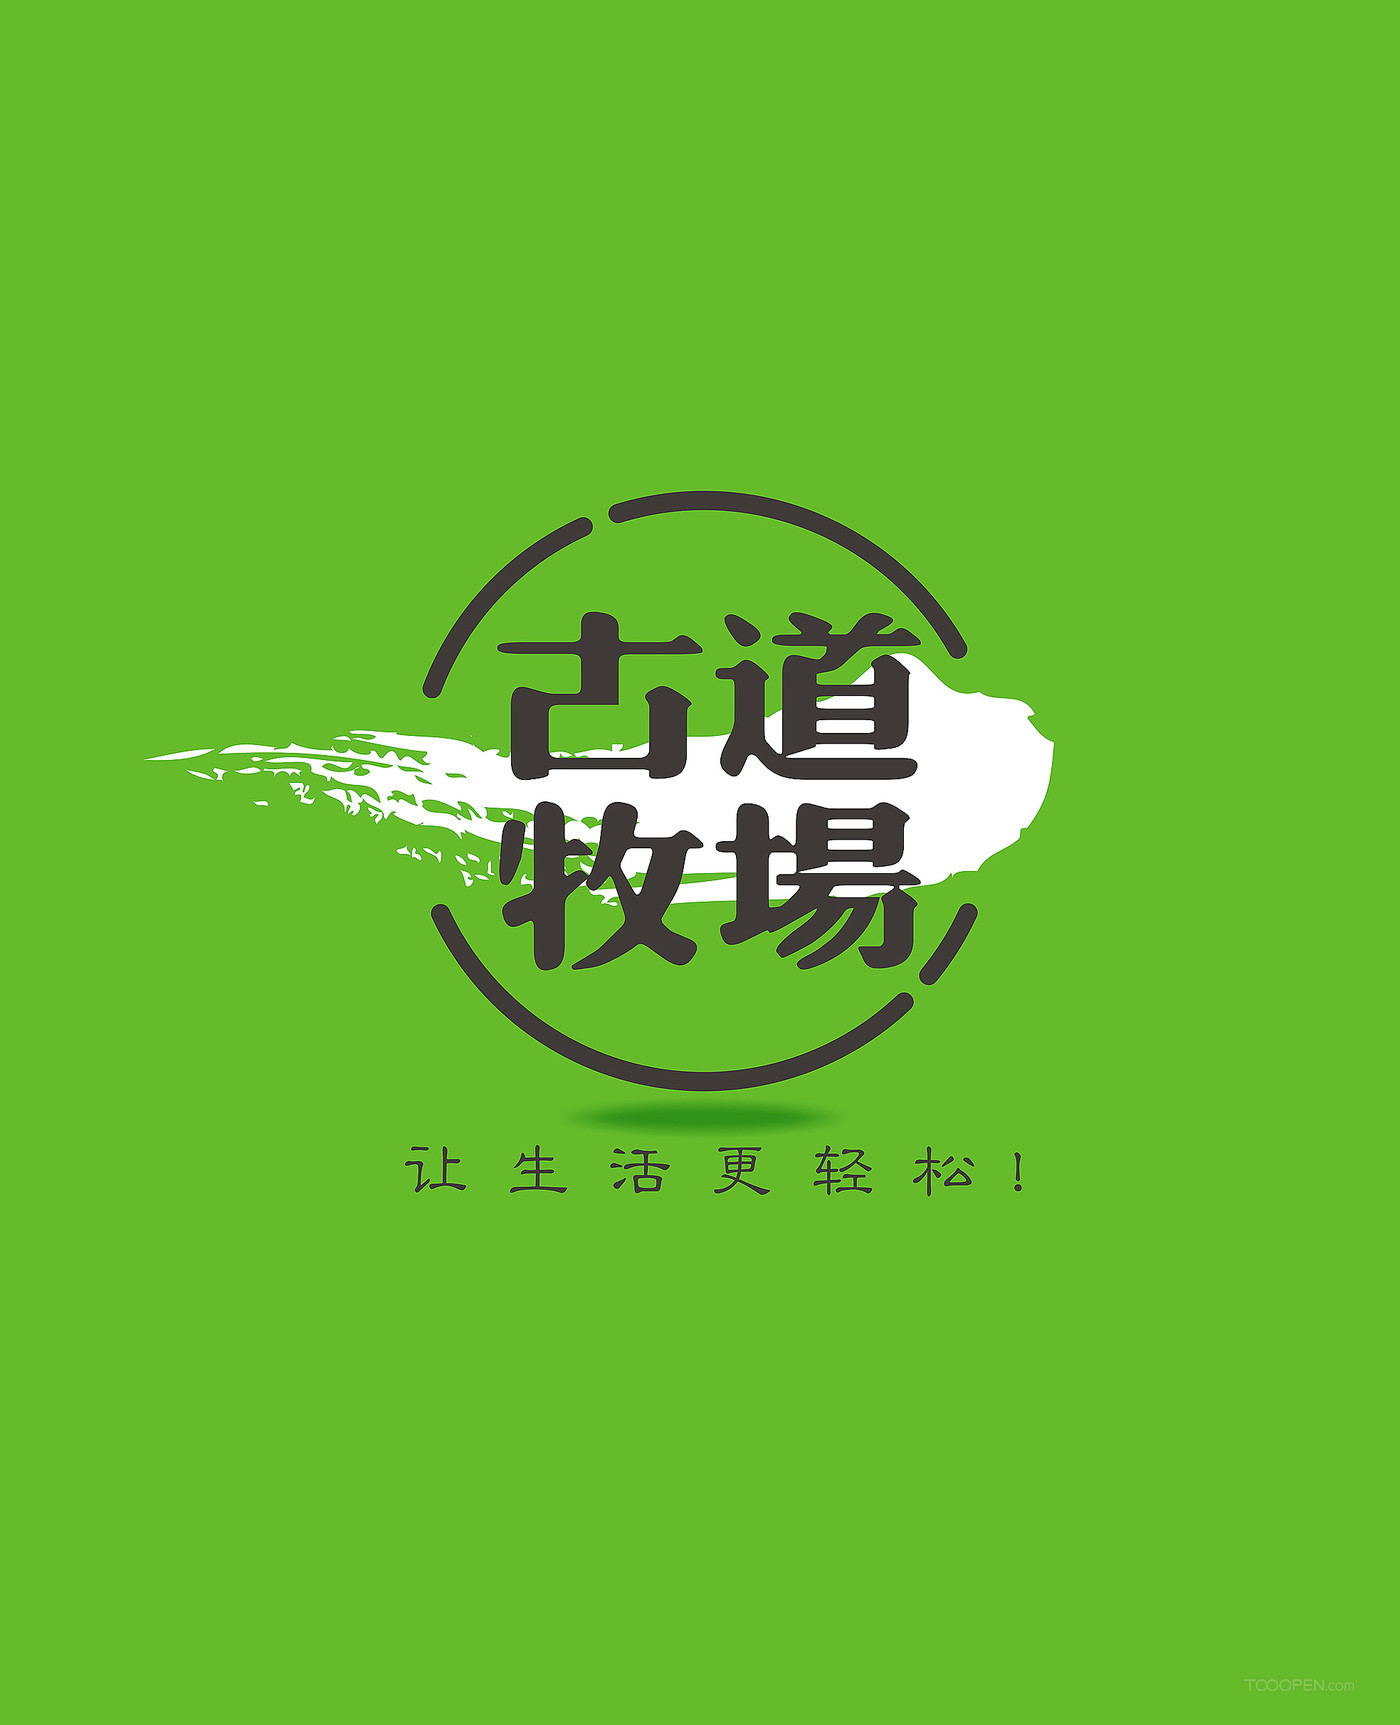 社区平台logo设计+草原产品logo设计-05